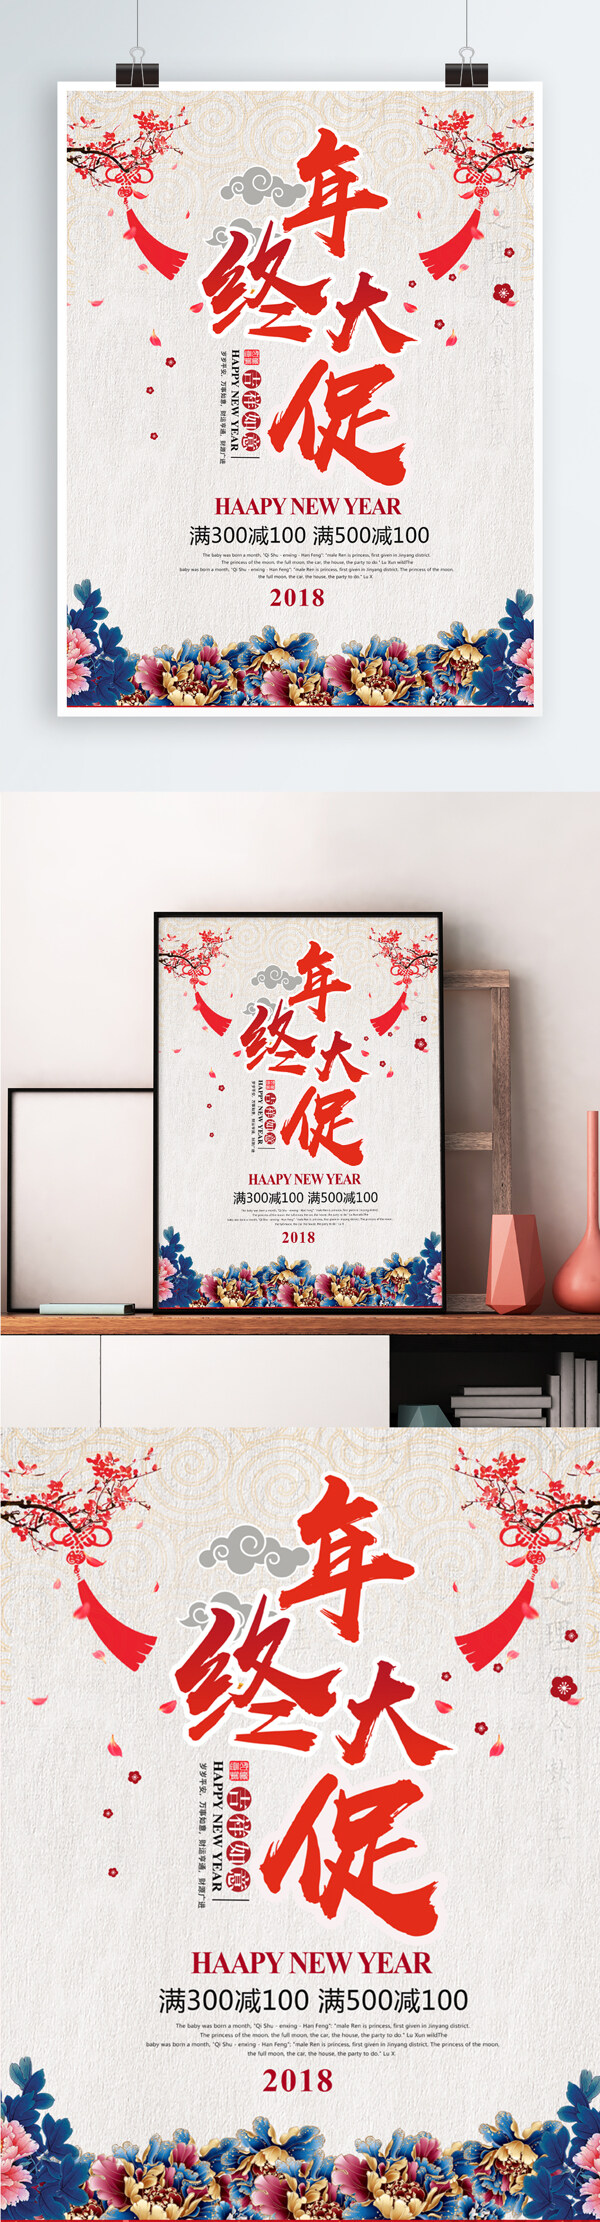 简约中国风年终大促海报设计模板